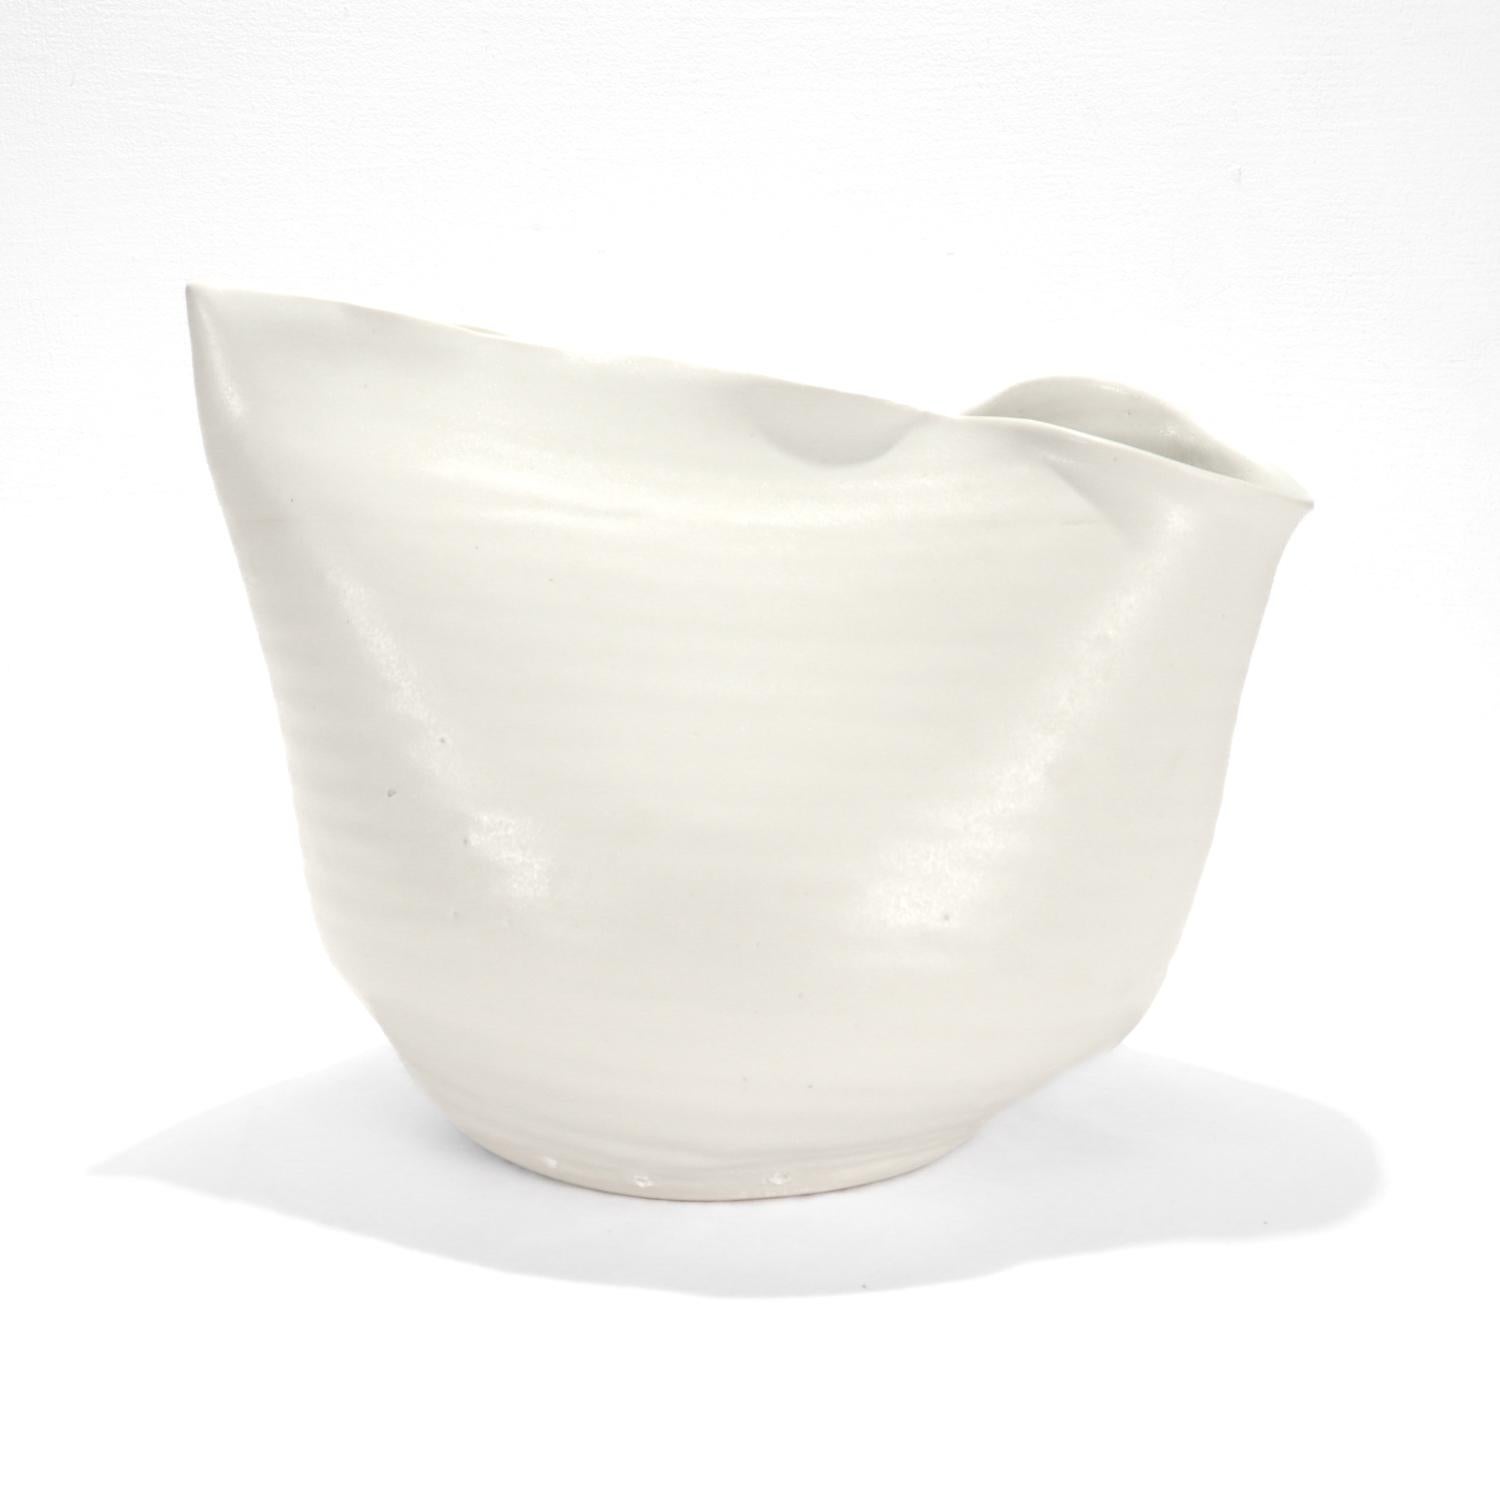 A fine limited edition porcelain vase.

By Donna Karan for Lenox Porcelain.

Entitled: 